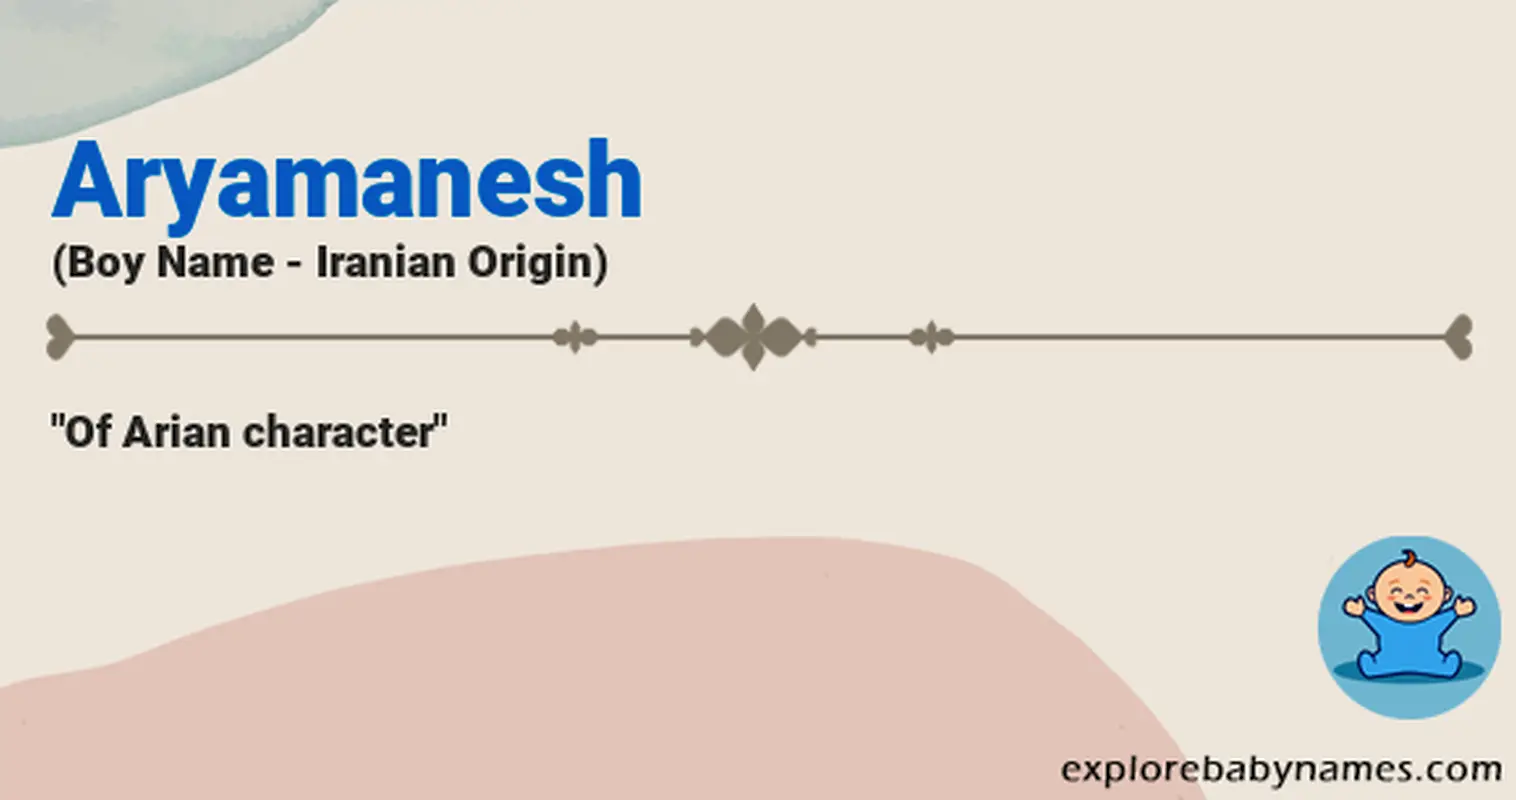 Meaning of Aryamanesh